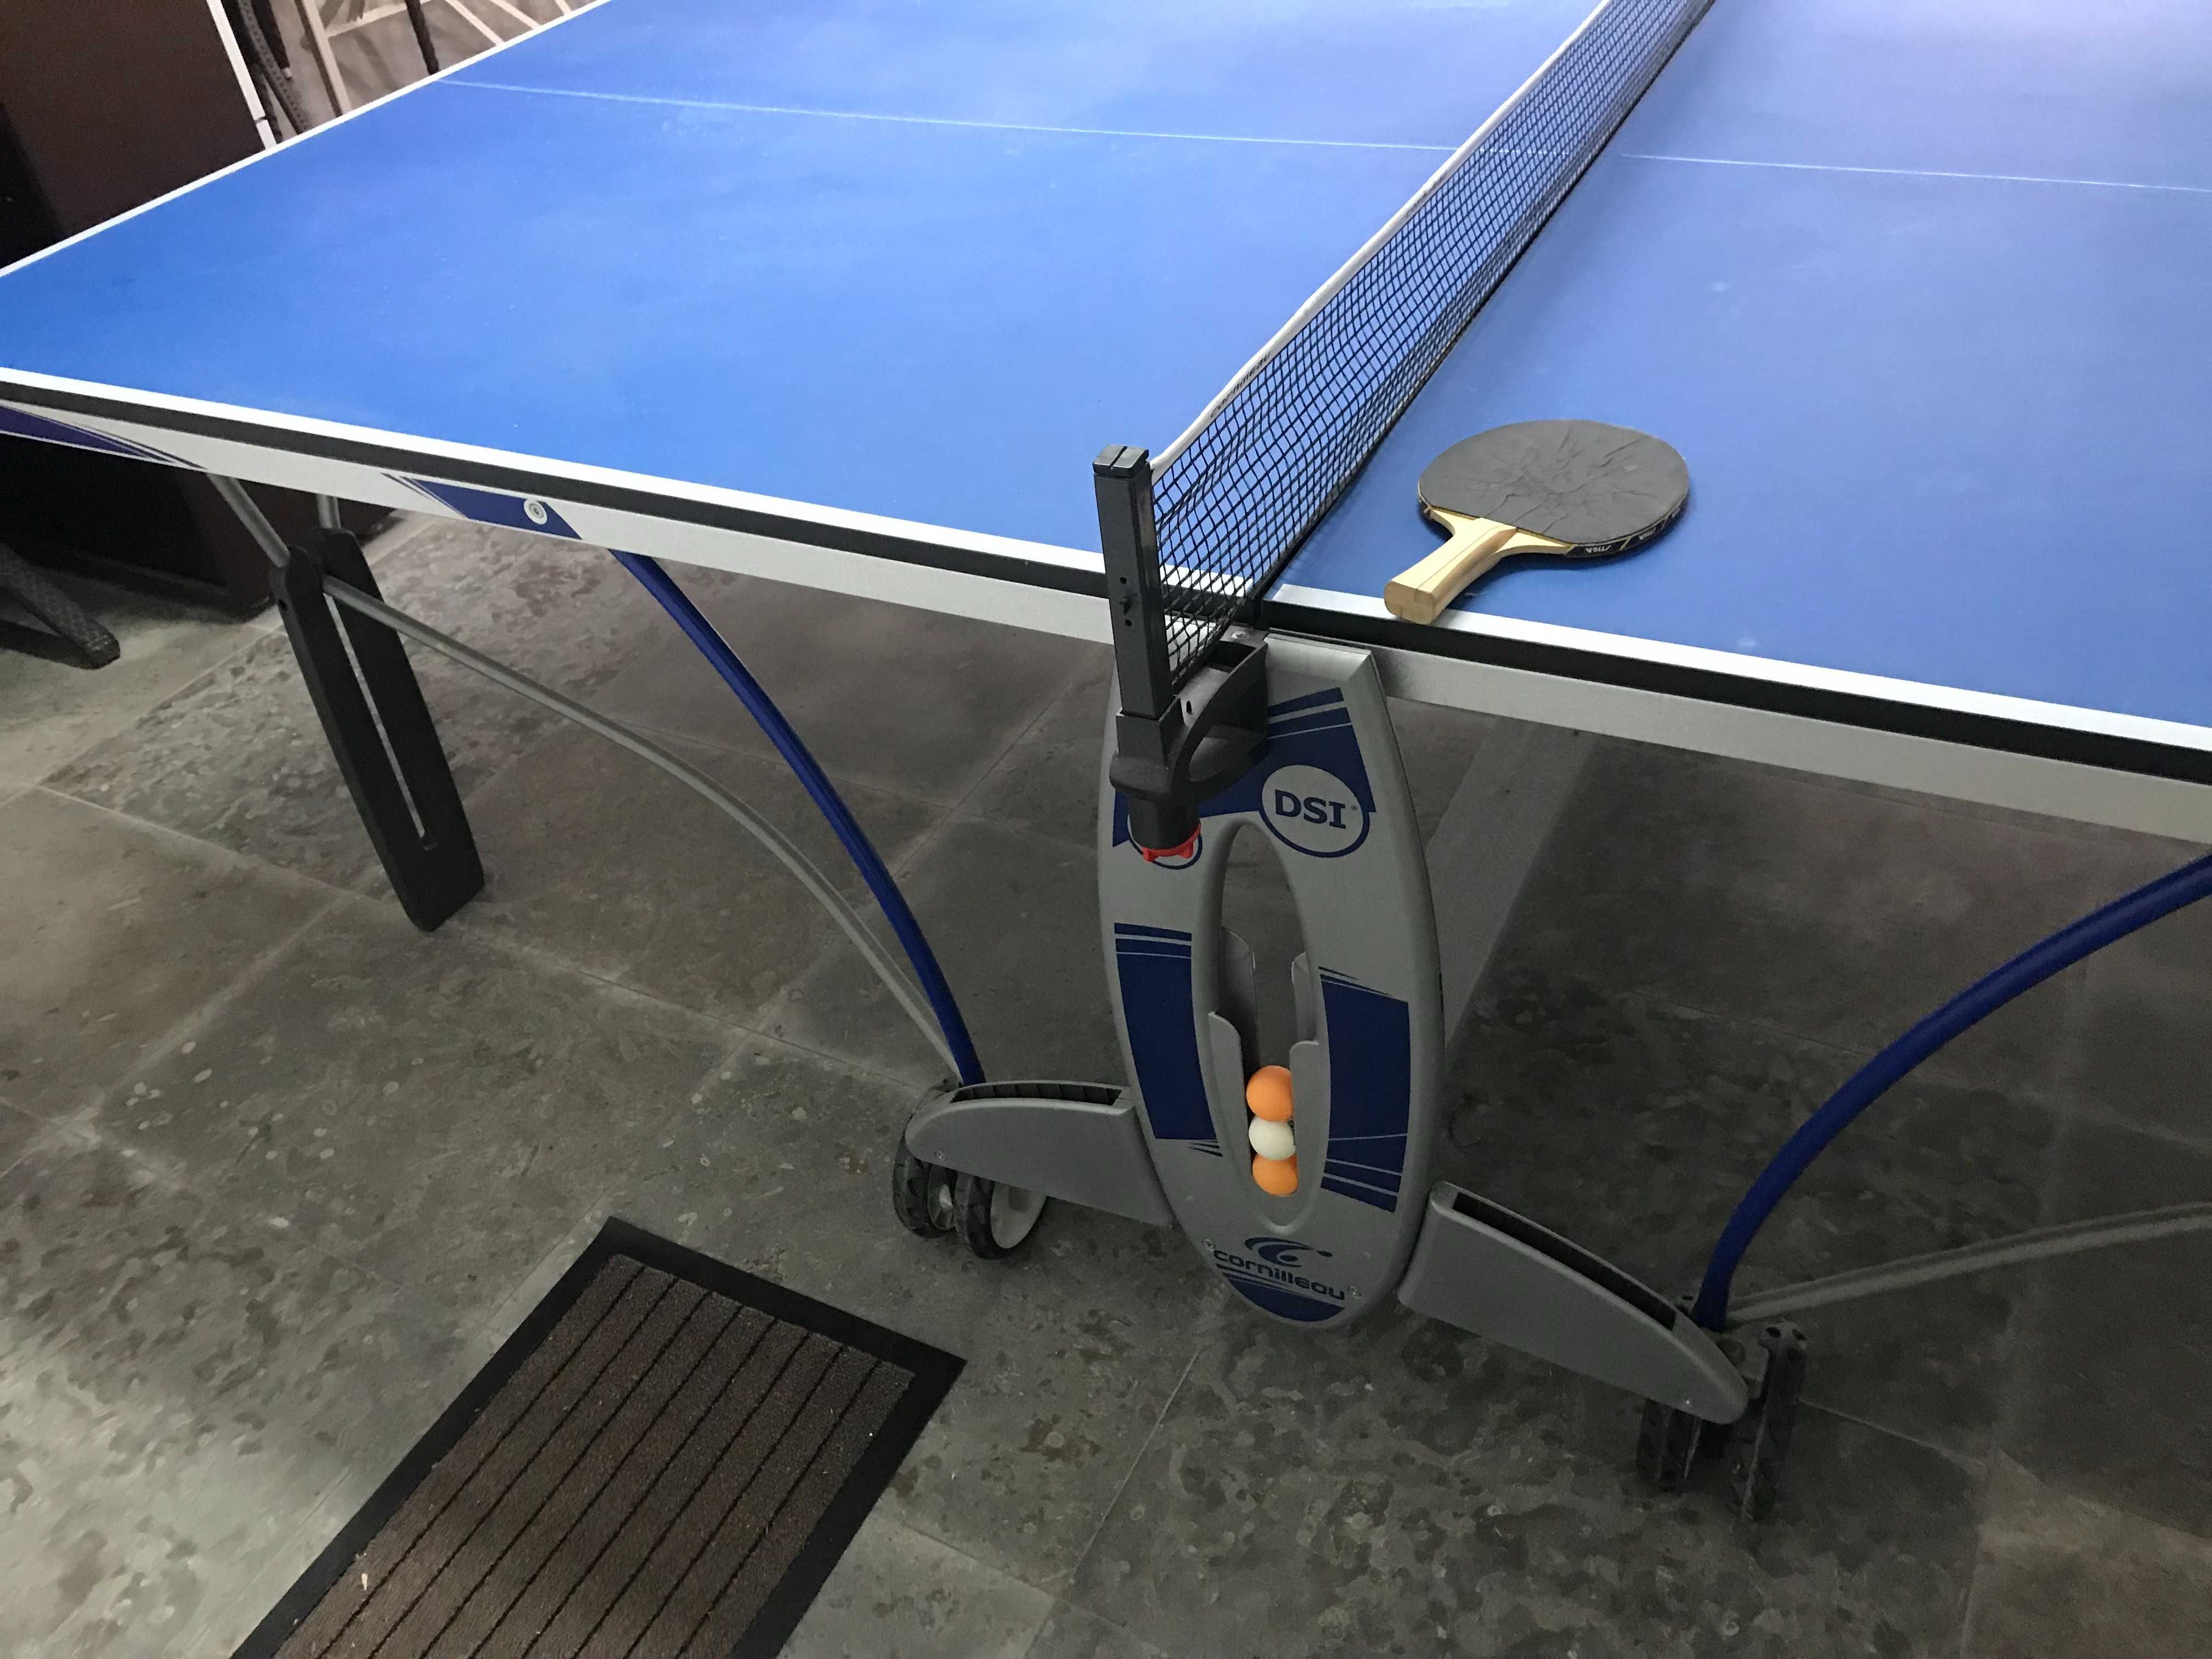 Mesa de Ping-Pong de interior